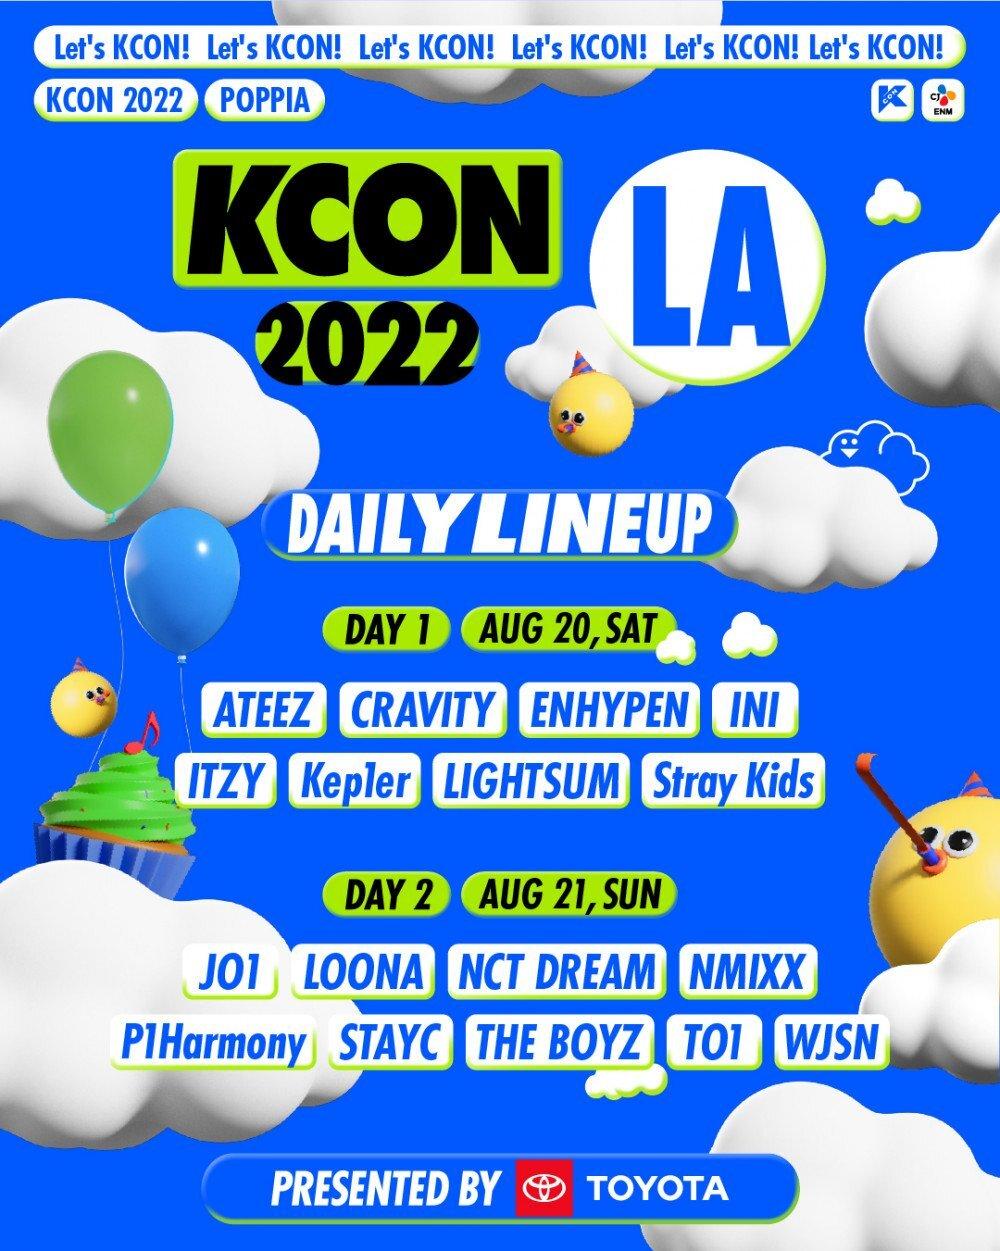 Lịch trình KCON LA 2022 năm nay (Ảnh: Internet)